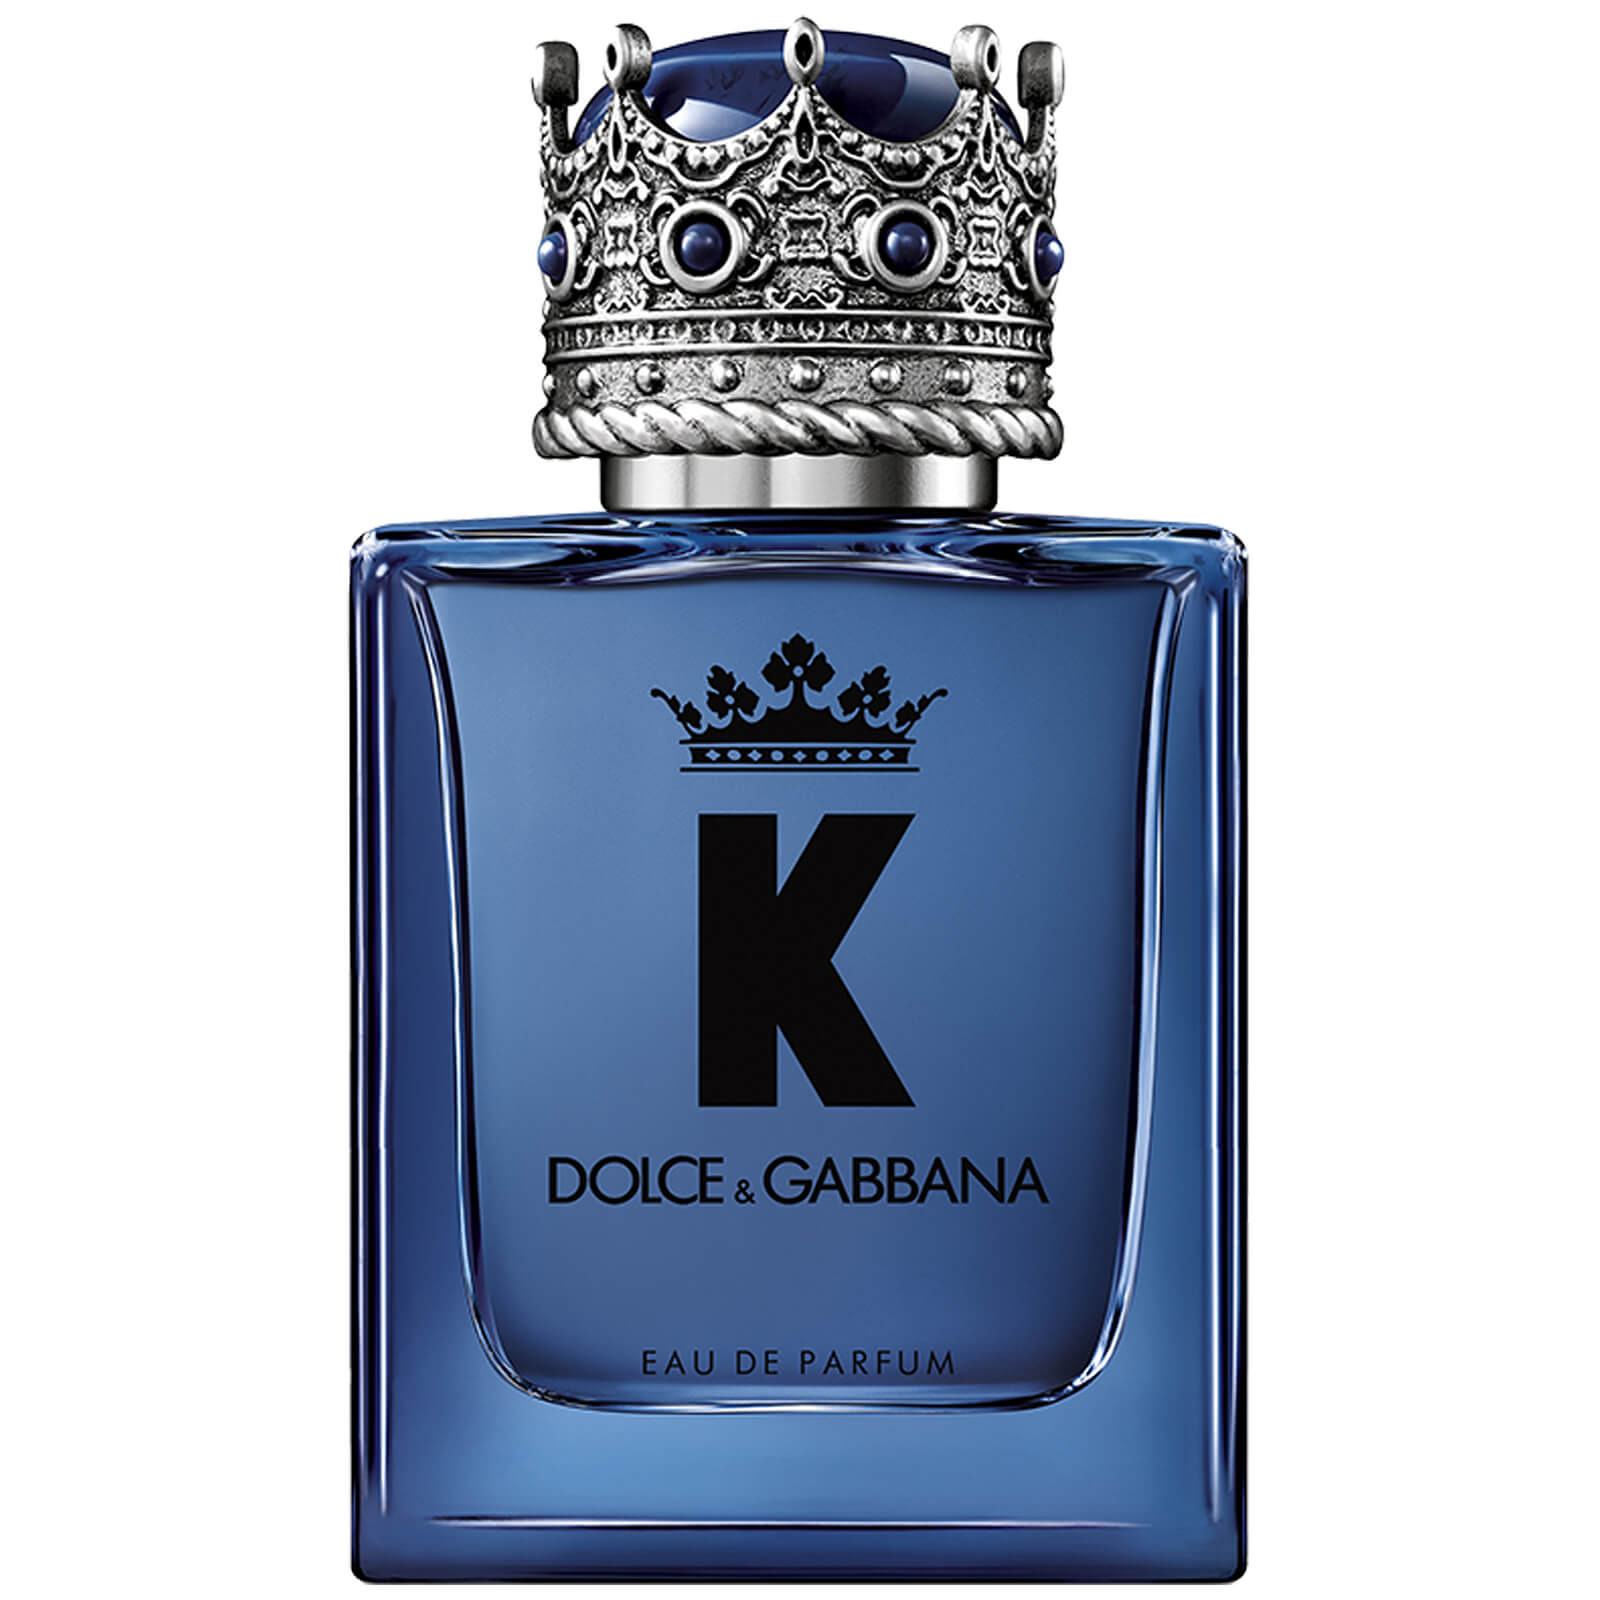 K by Dolce&Gabbana Eau de Parfum - 50ml von Dolce&Gabbana